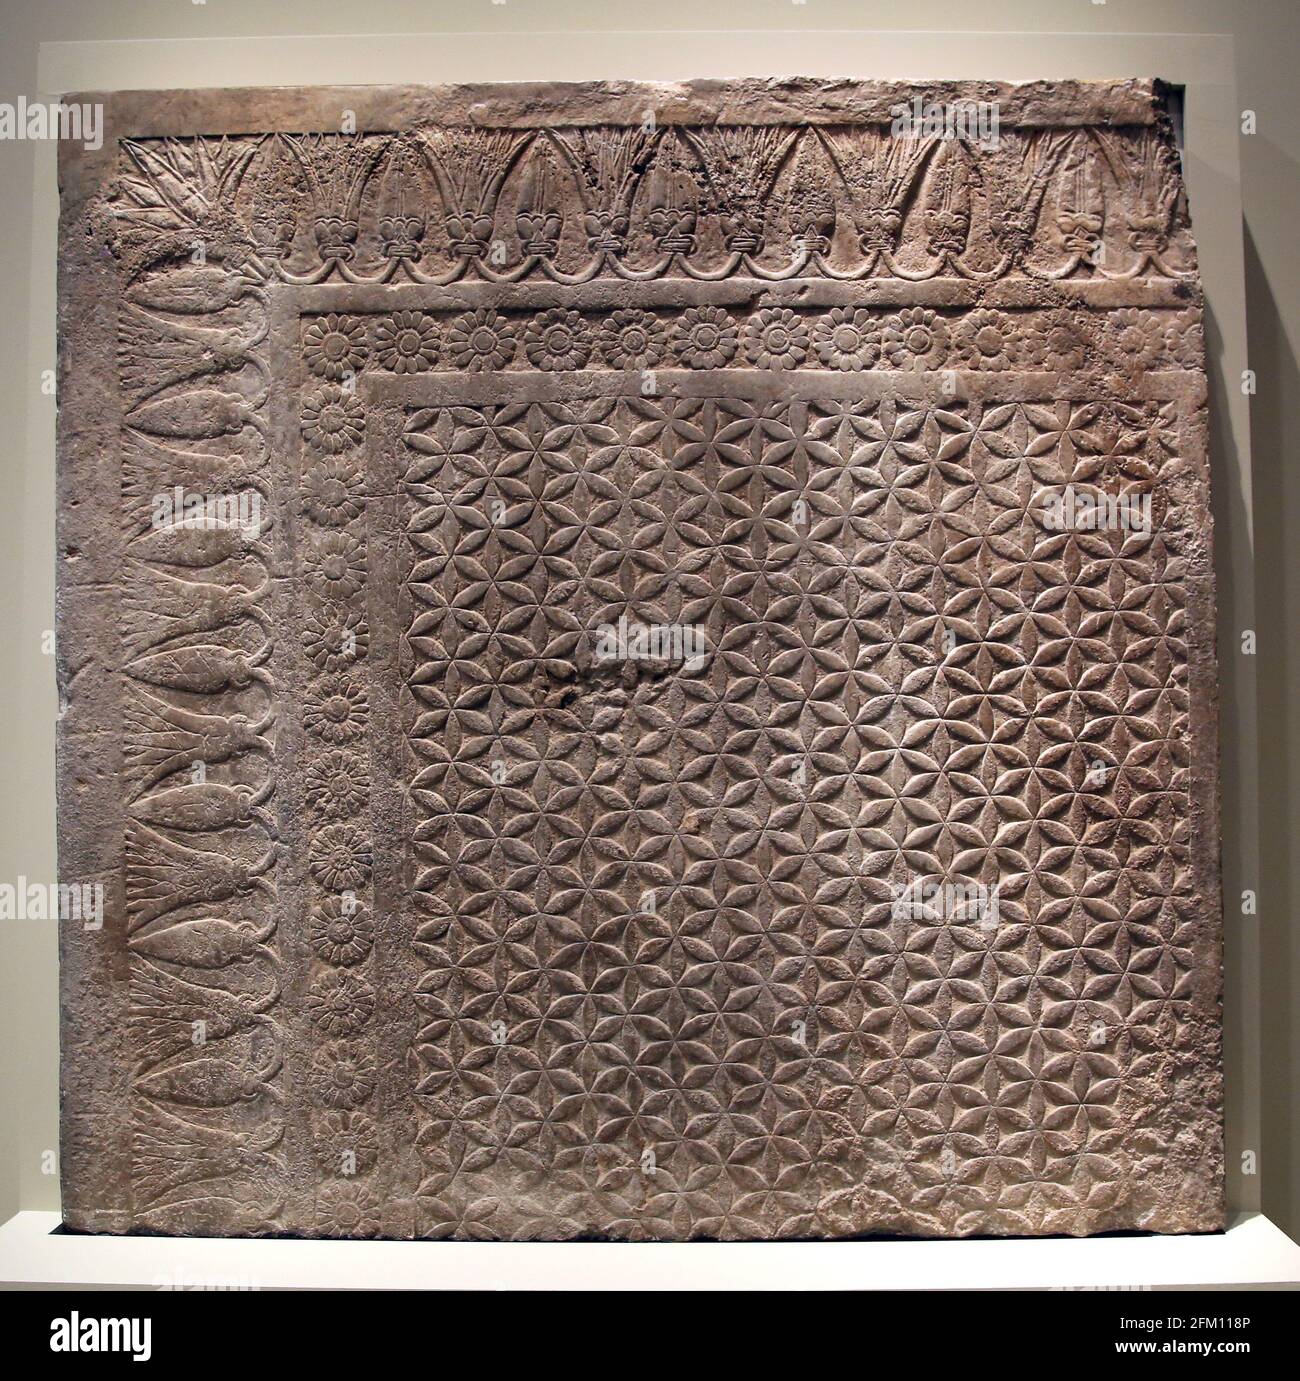 Geschnitzte Türstill. Nordpalast, Ninive, Irak. 645-640 V. CHR. Kalkstein. Neo-Assyrisches Reich. British Museum. London. Stockfoto